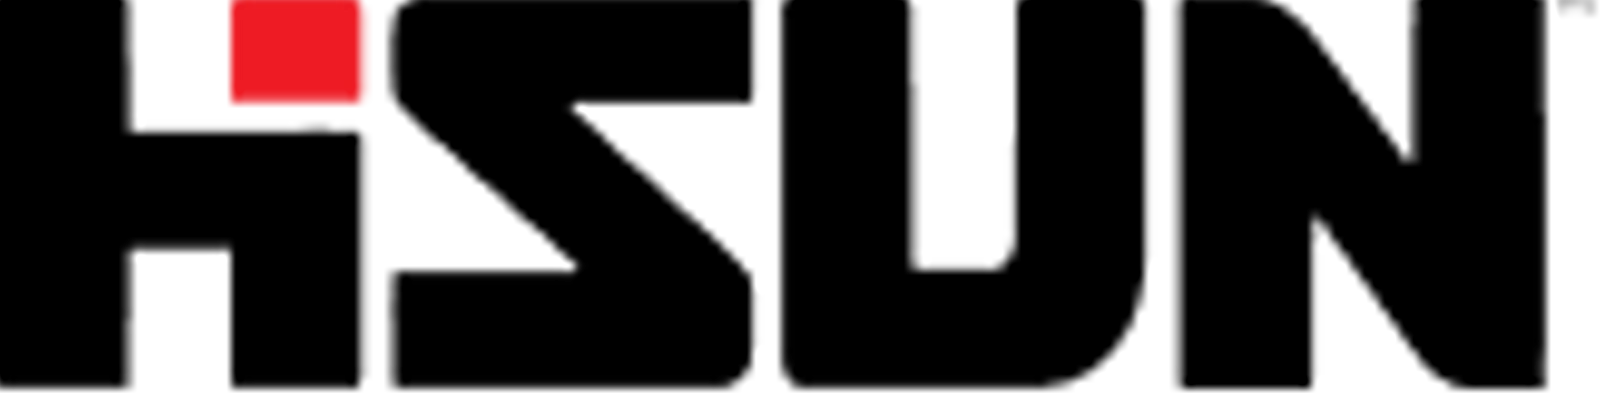 логотип Hisun